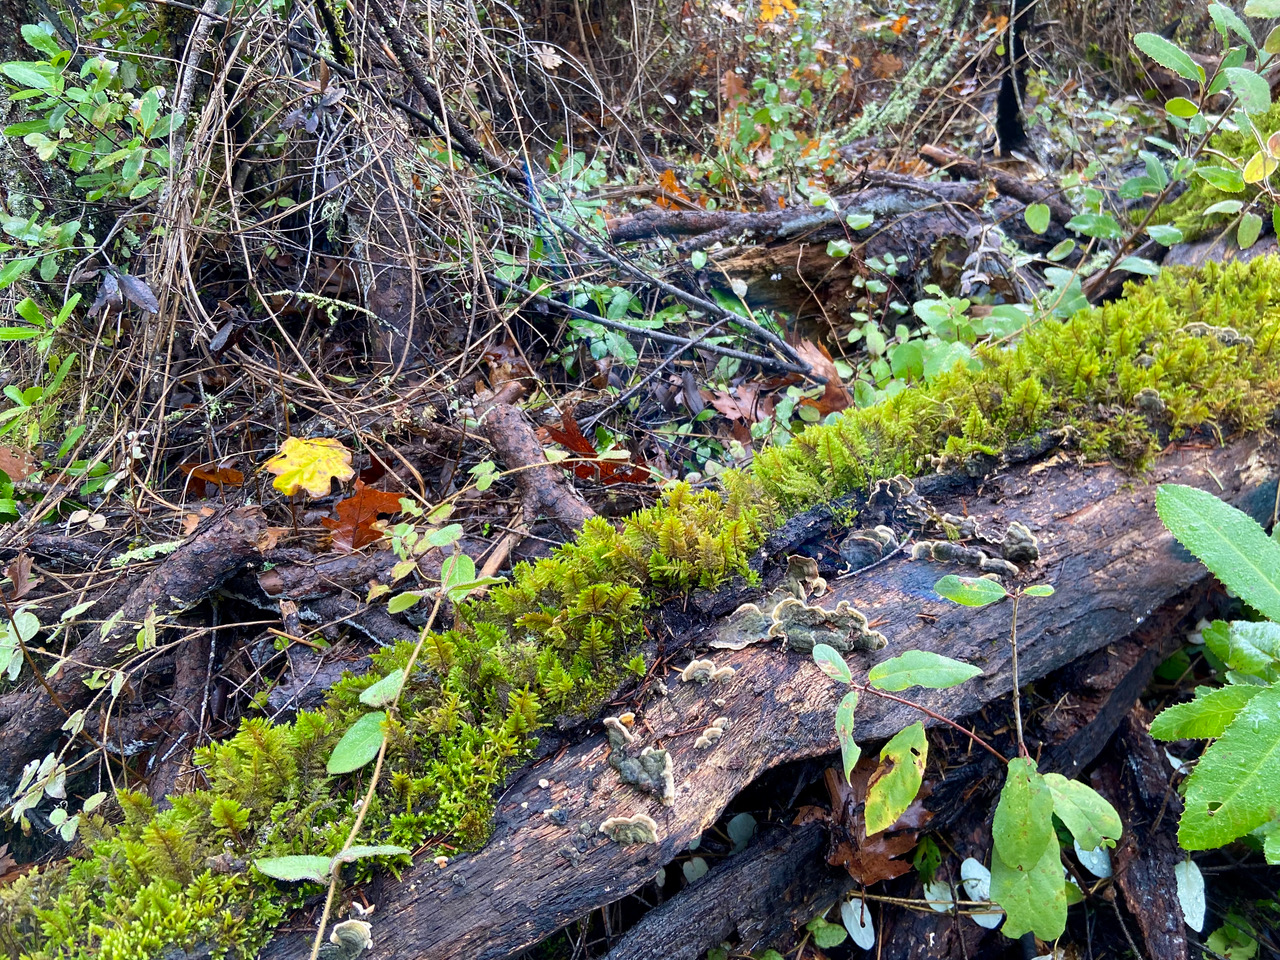 moss and fungi growing on log